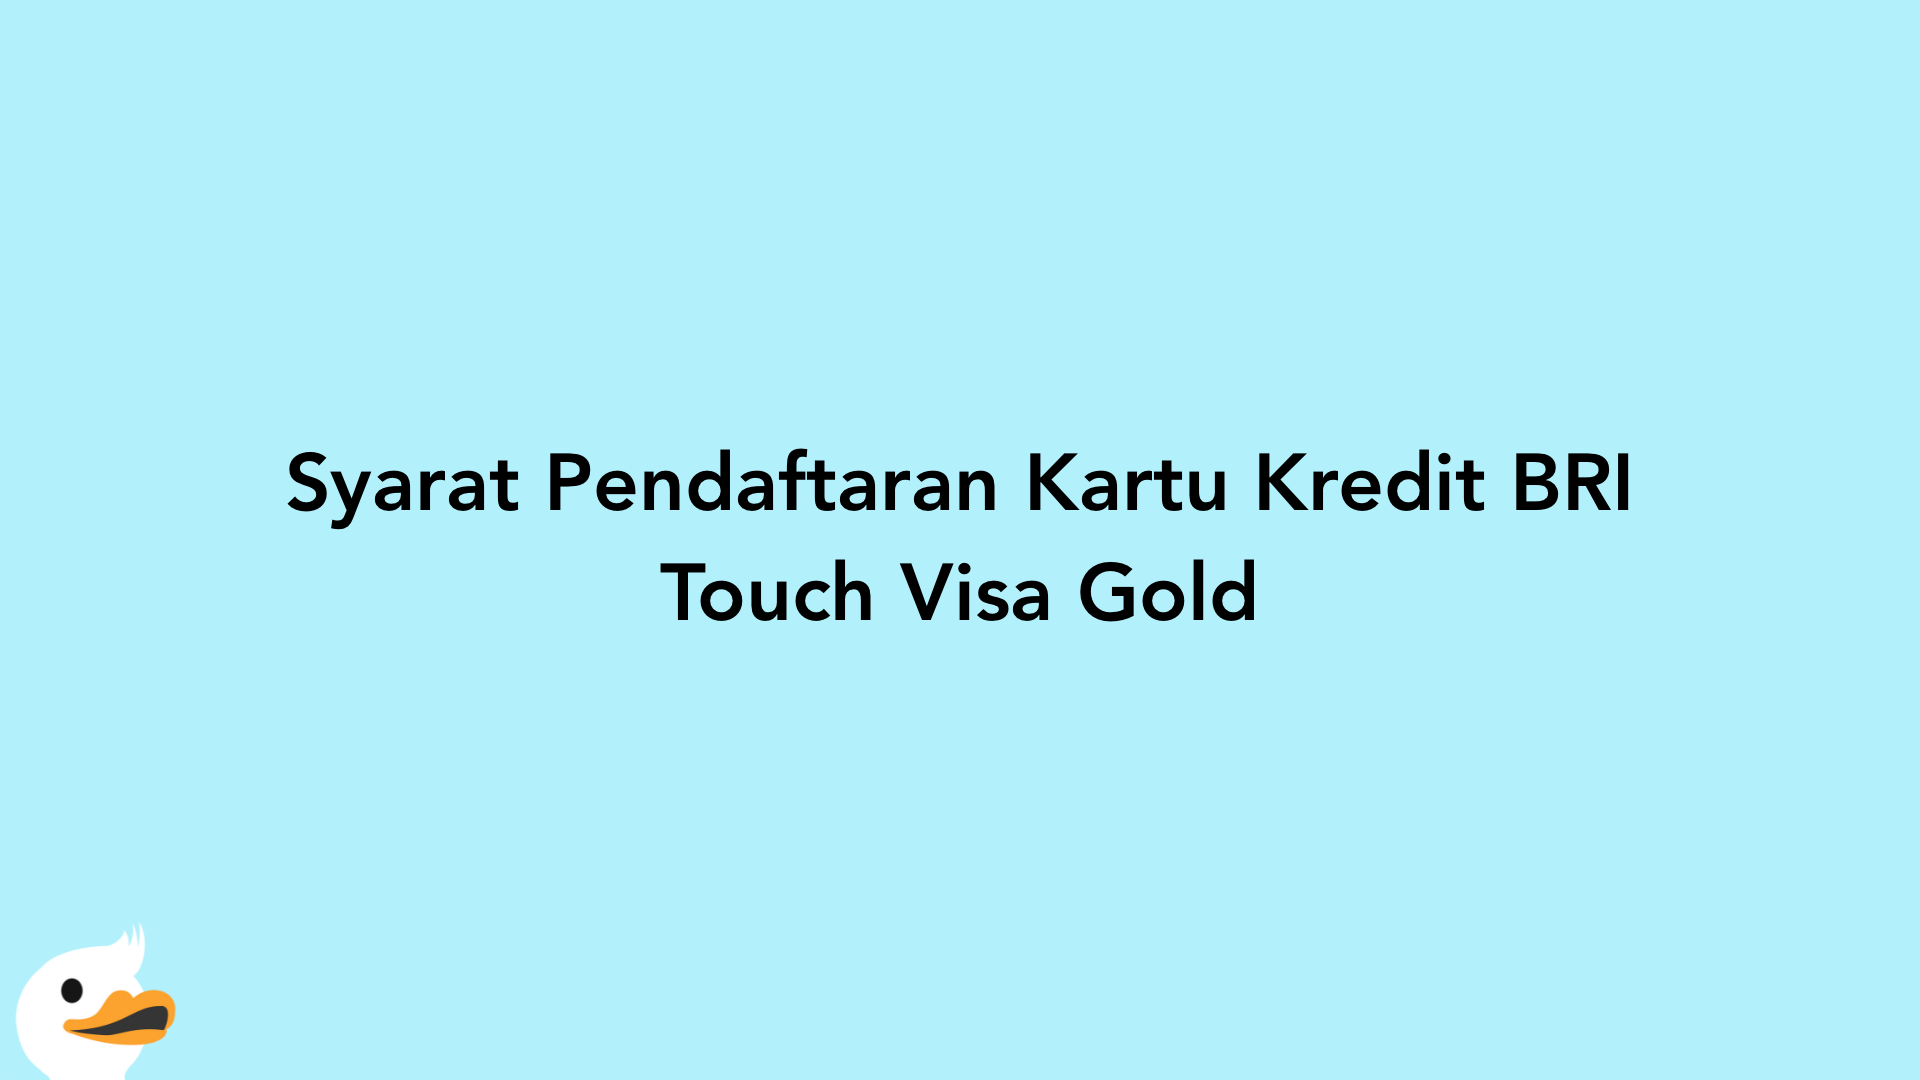 Syarat Pendaftaran Kartu Kredit BRI Touch Visa Gold